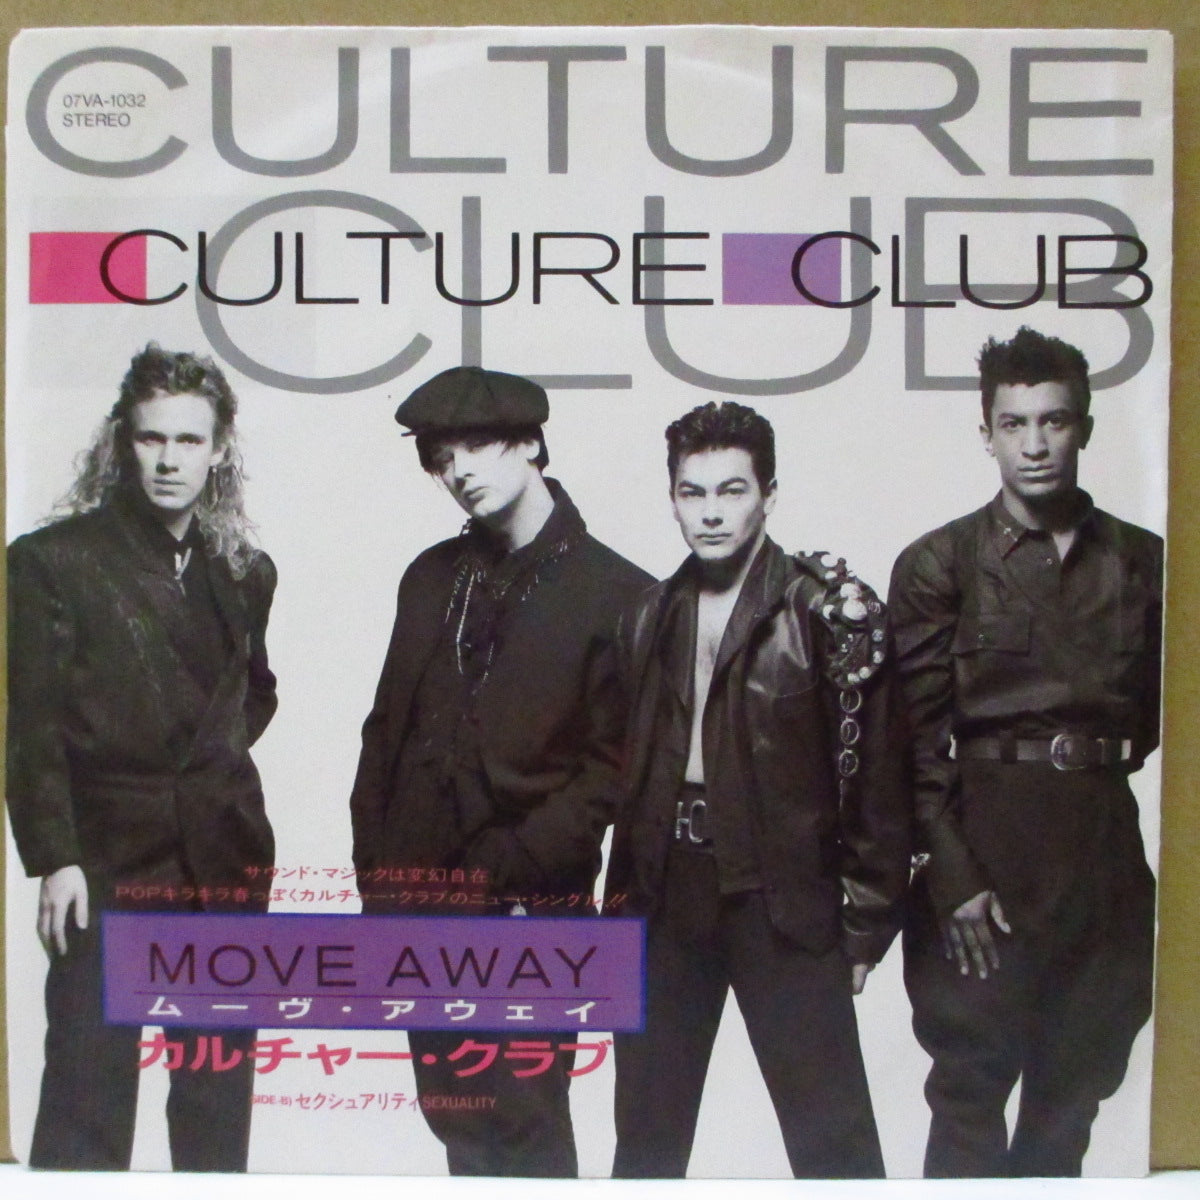 CULTURE CLUB (カルチャー・クラブ) - Move Away (Japan オリジナル 7